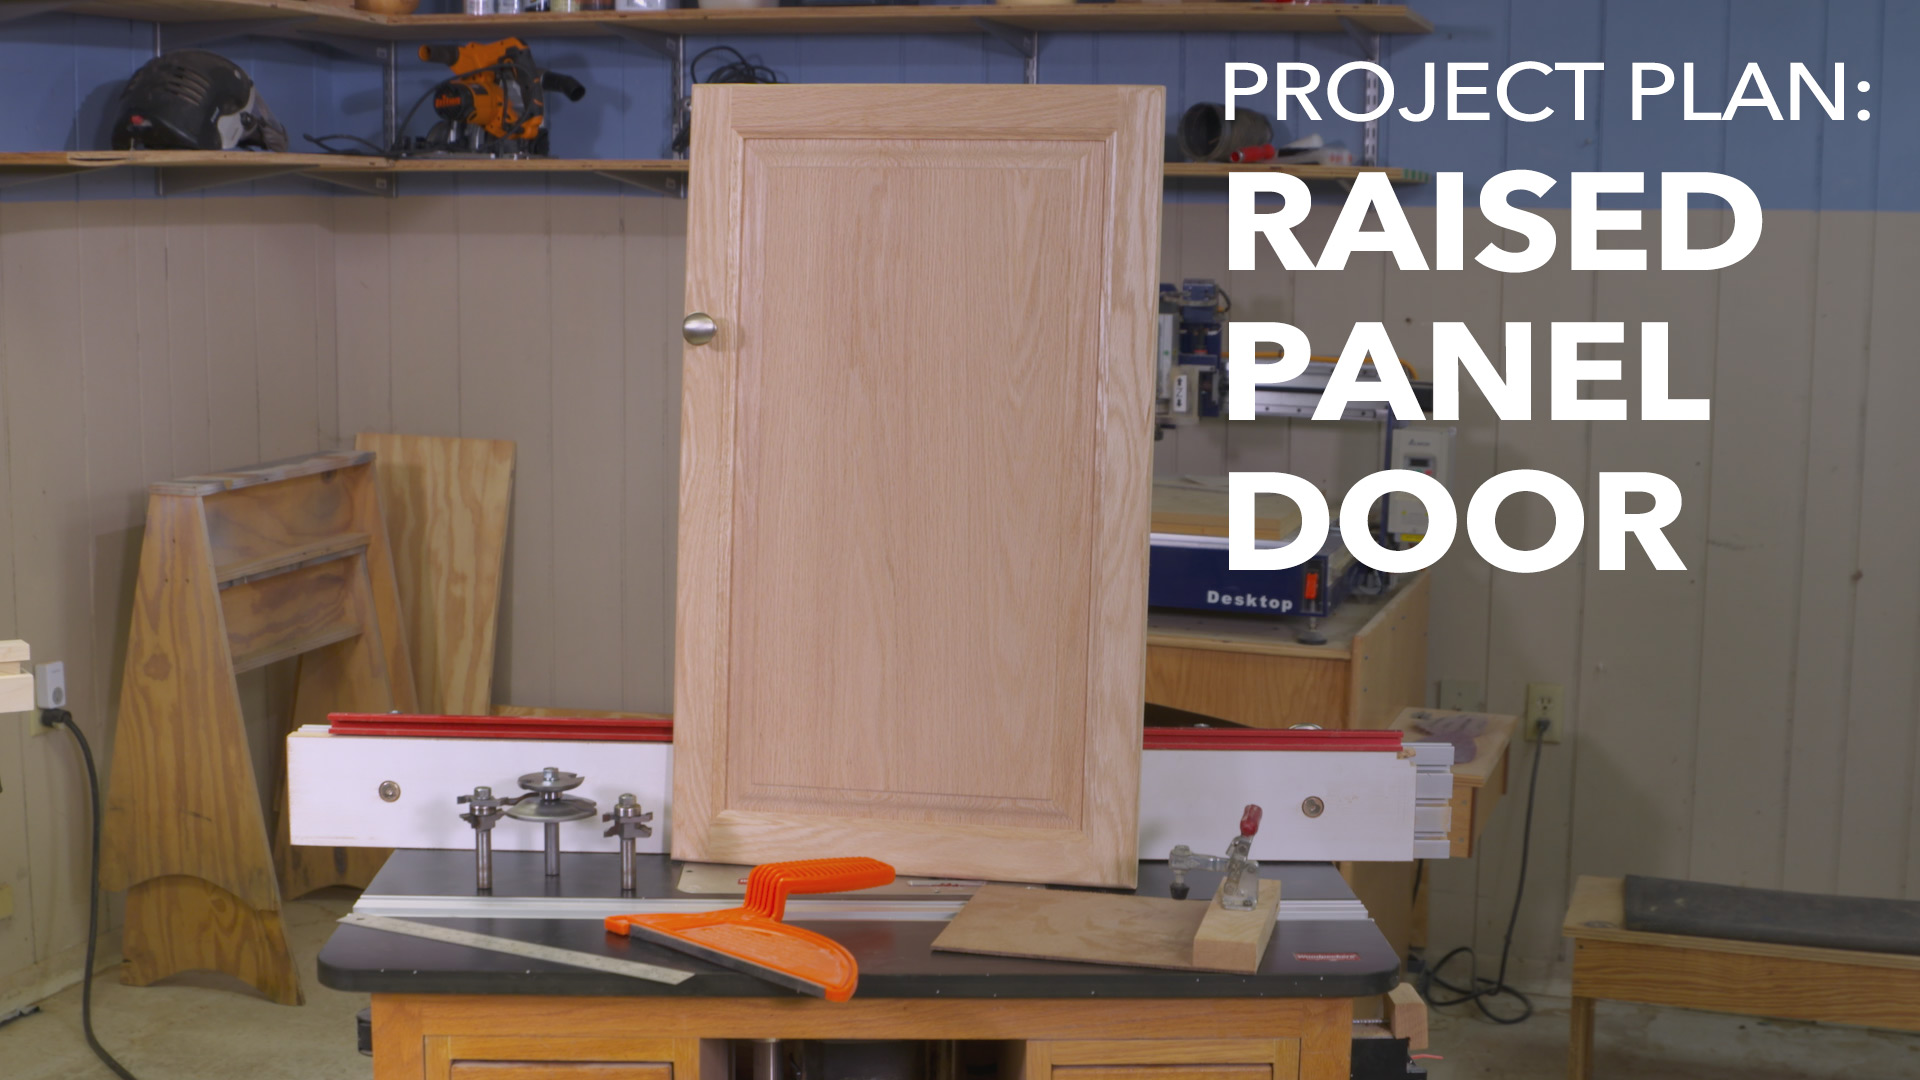 Raised panel door